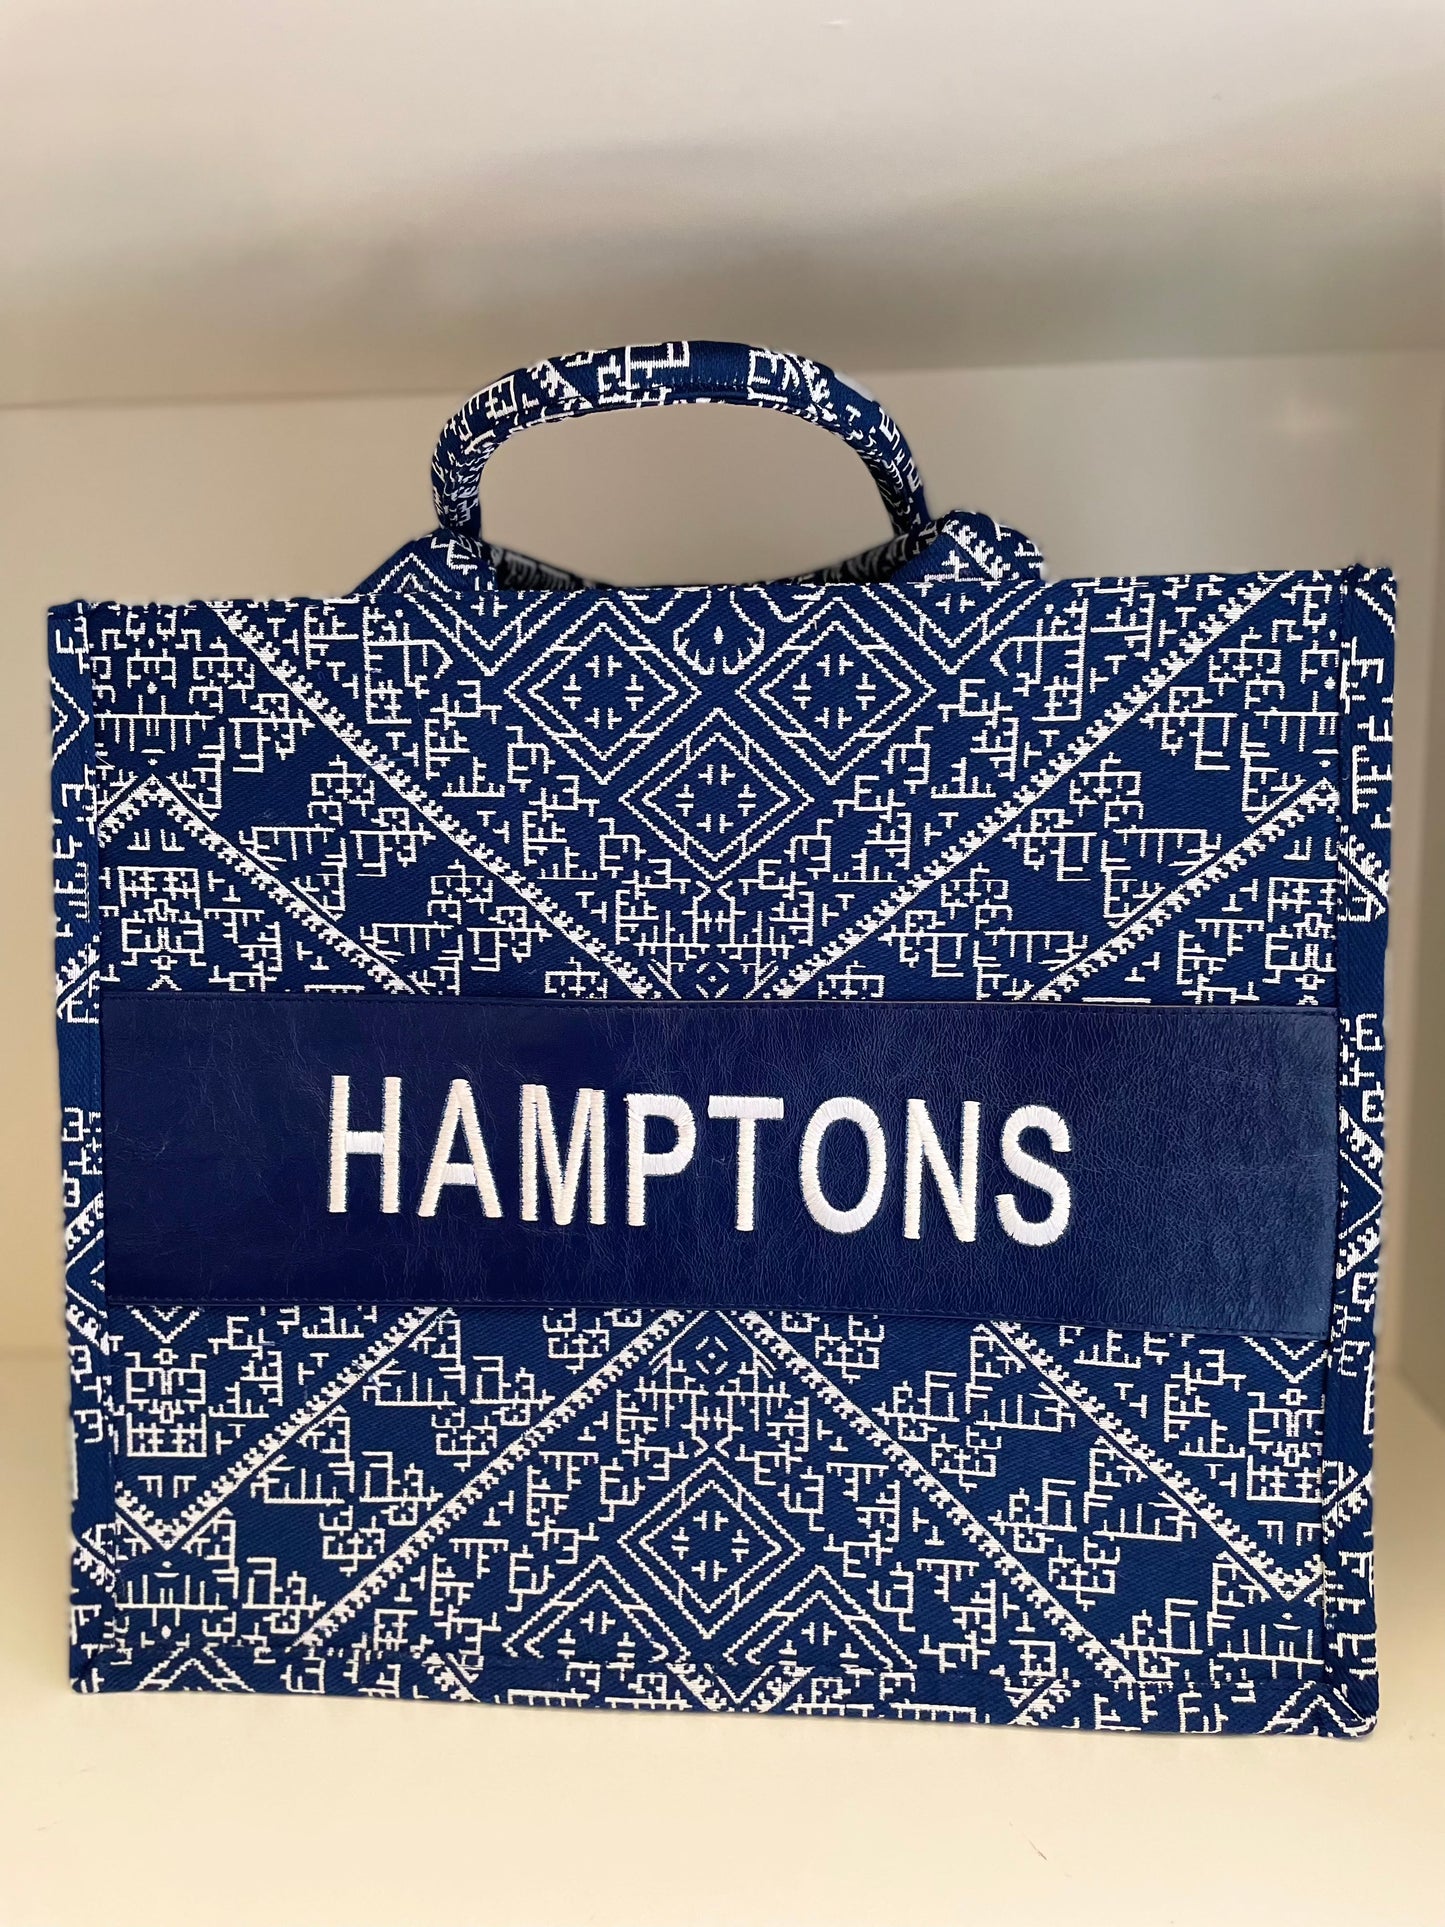 Large Tote CD Hamptons - Premium Bag from Marina St. Barth - Just $395.00! Shop now at Marina St Barth